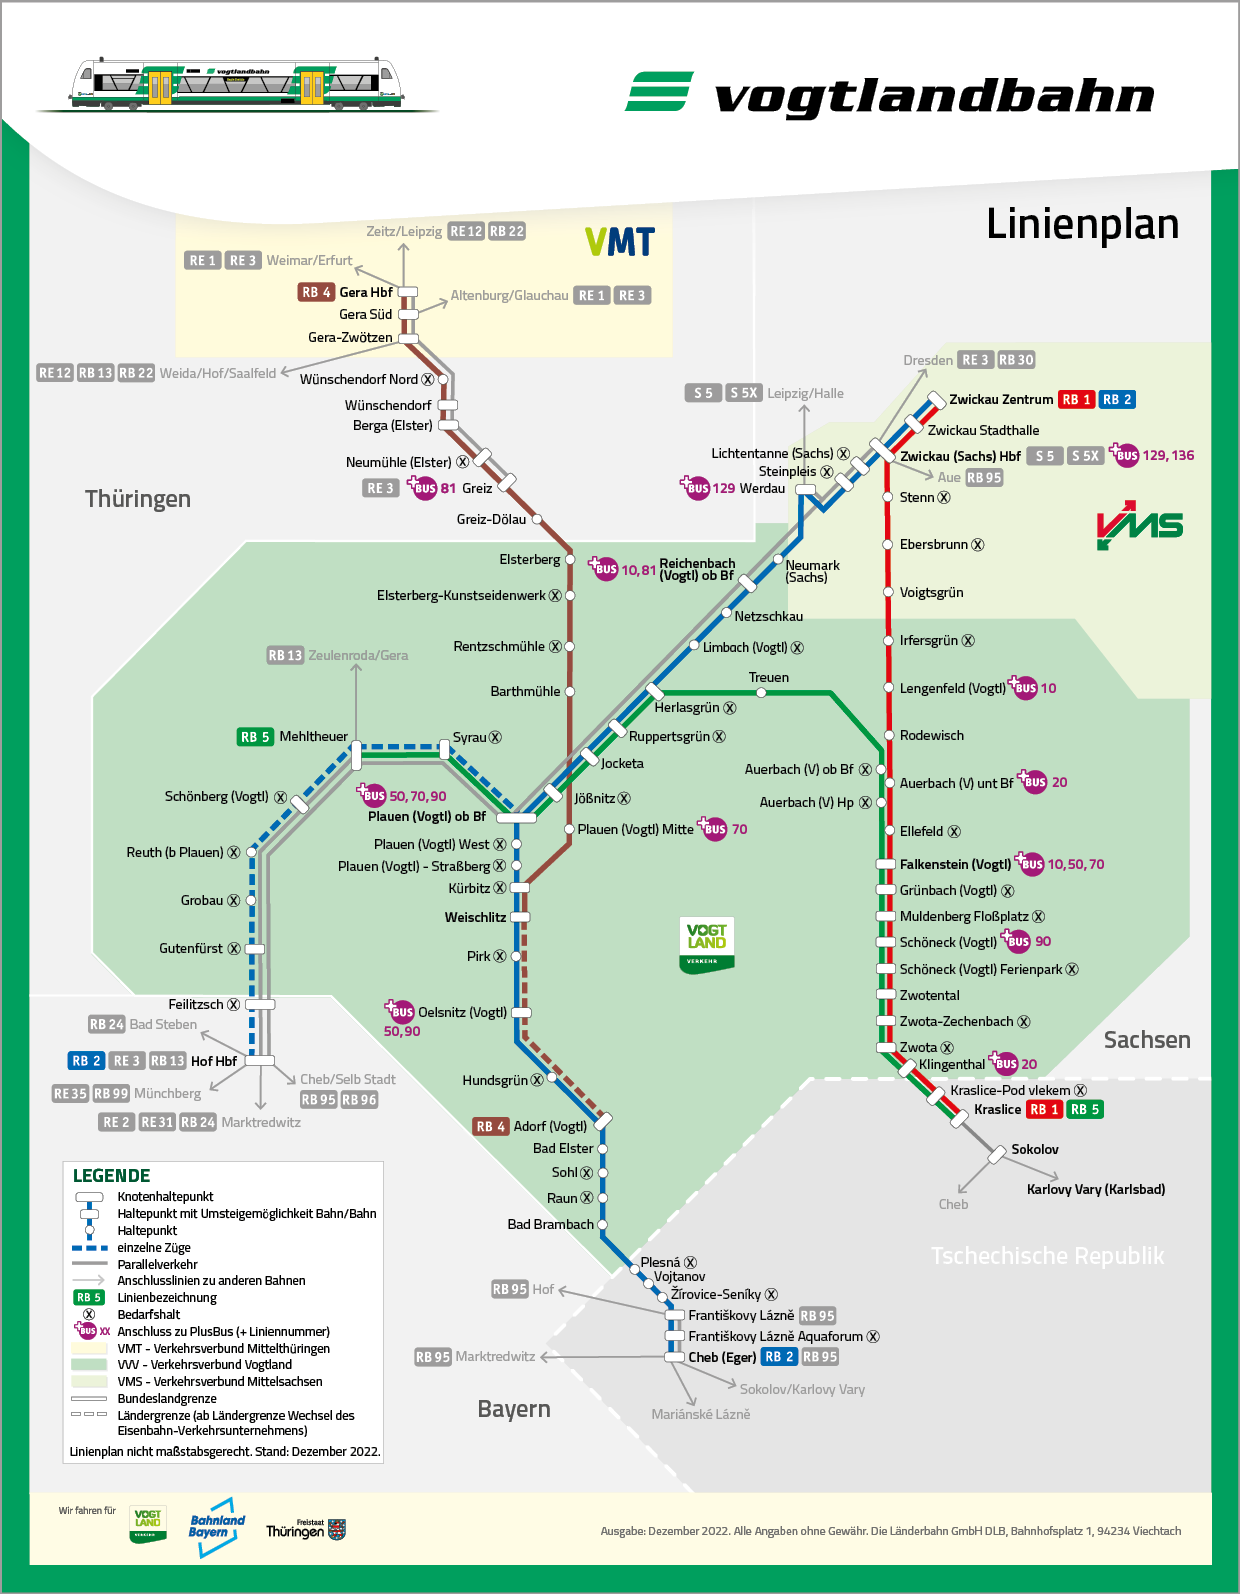 Linienplan der Vogtlandbahn mit Stand Dezember 2022